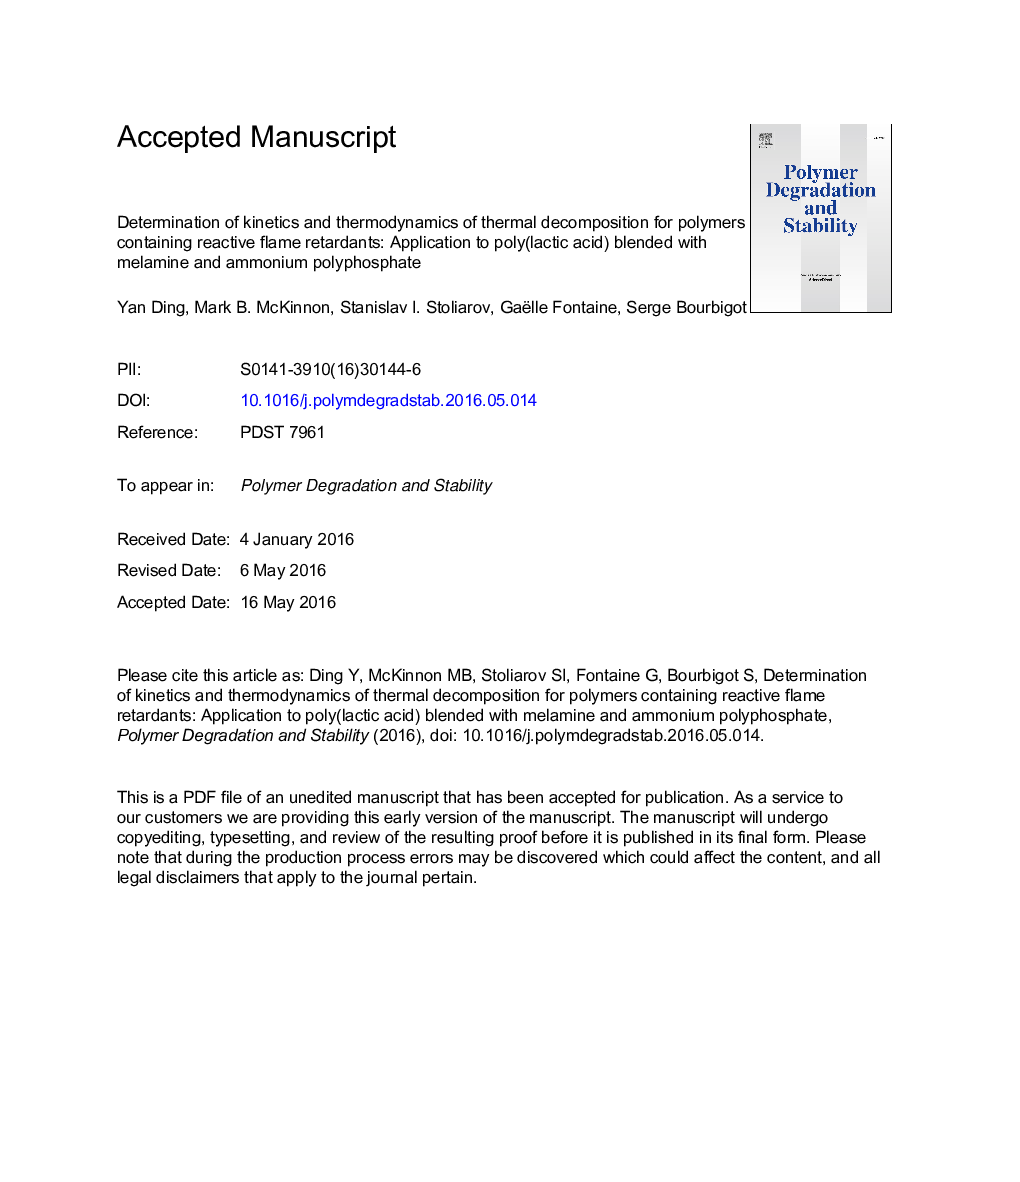 تعیین سینتیک و ترمودینامیک تجزیه حرارتی برای پلیمرهای حاوی بازدارنده های شعله مقاوم: استفاده از پلی (اسید لاکتیک) مخلوط با ملامین و پلی فسفات آمونیوم 